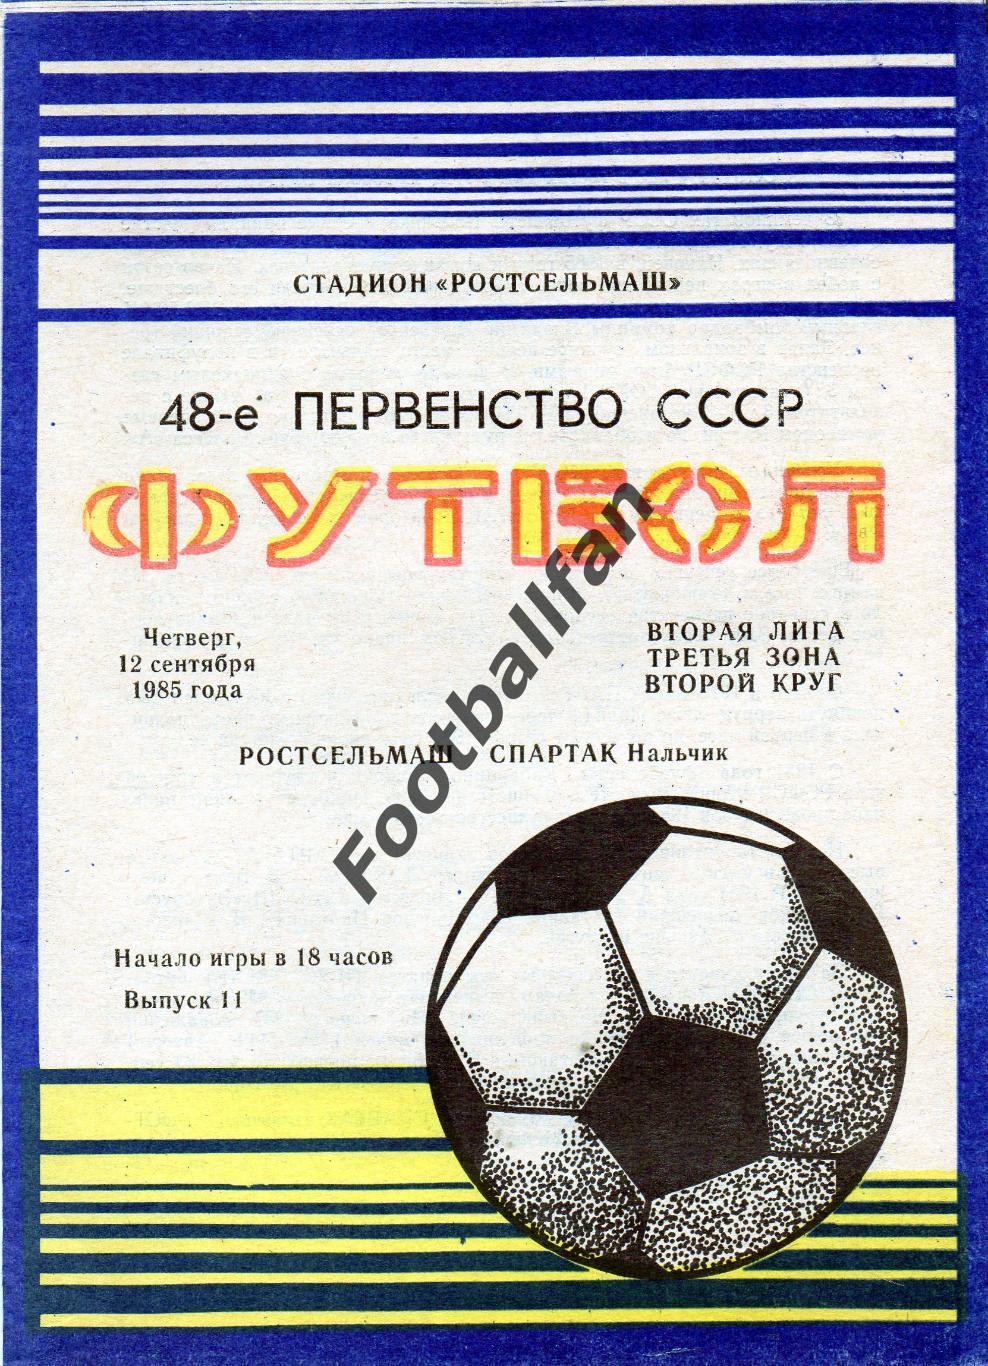 Ростсельмаш Ростов - Спартак Нальчик 12.09.1985